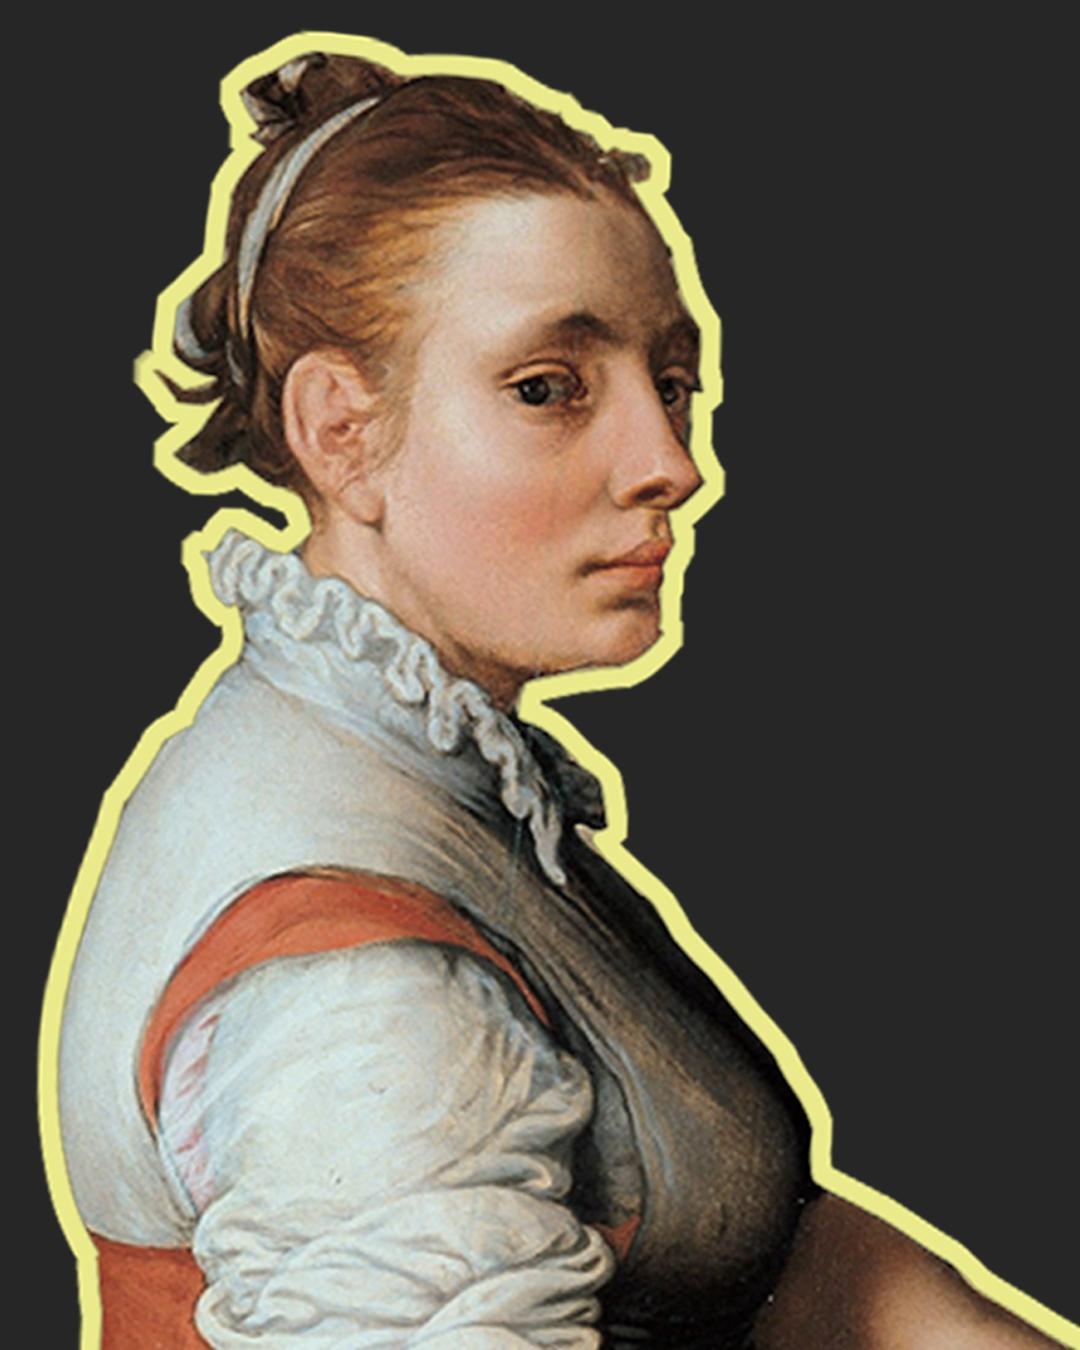 Portrait einer Frau mit hochgesteckten Haaren und weißer Bluse. Ihr Blick ist leer.  © Wikimedia